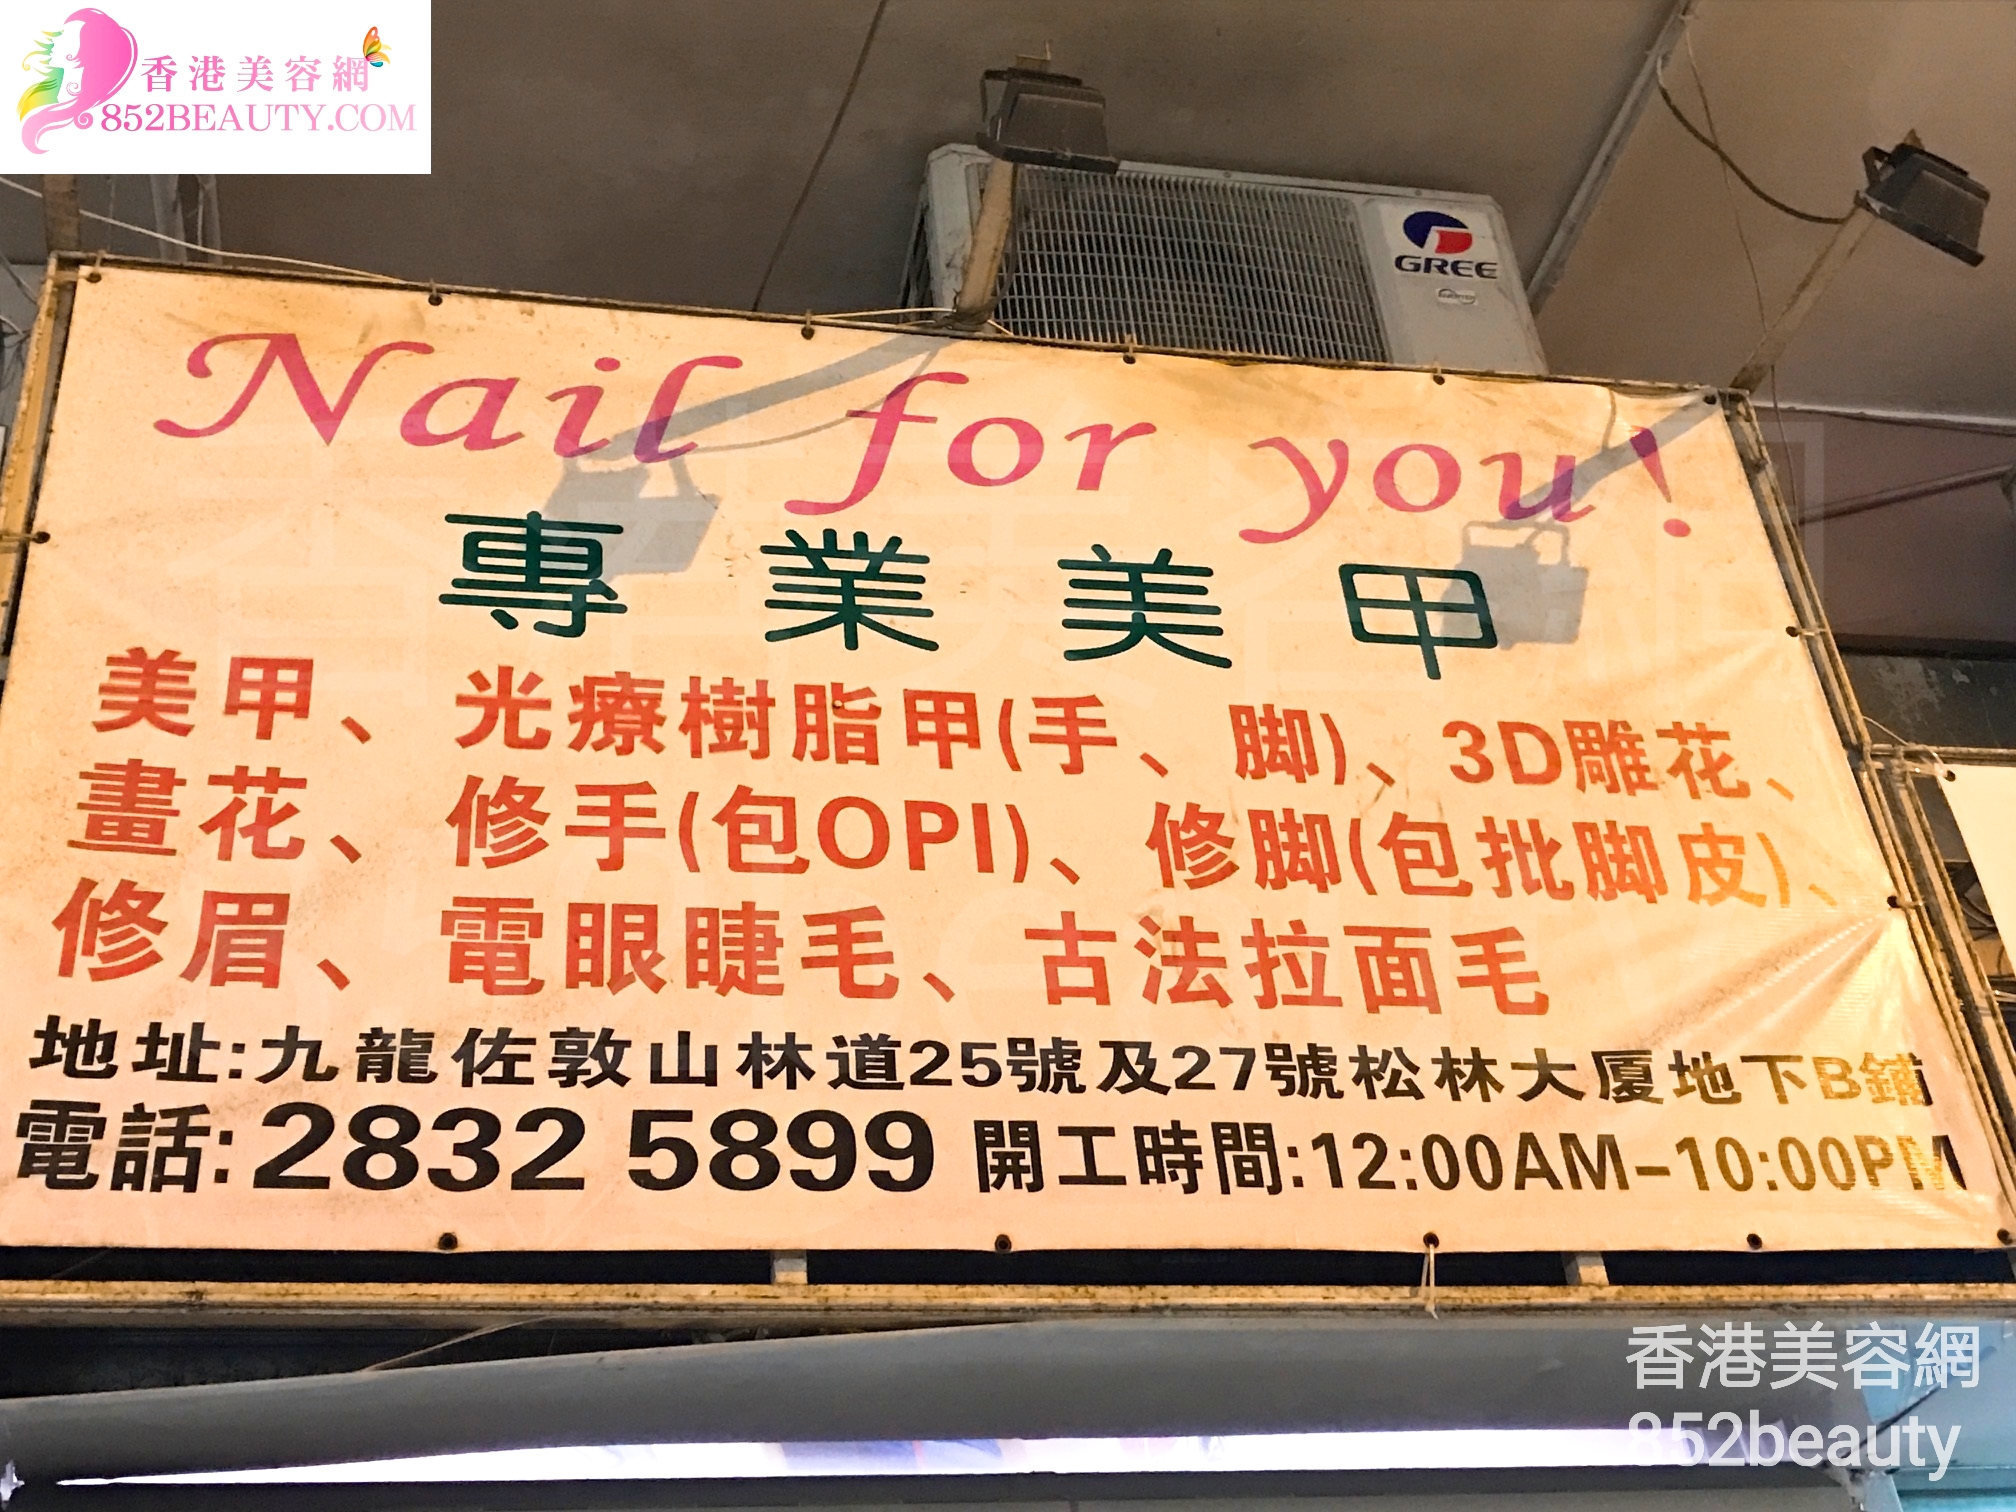 香港美容網 Hong Kong Beauty Salon 美容院 / 美容師: Nail for you !